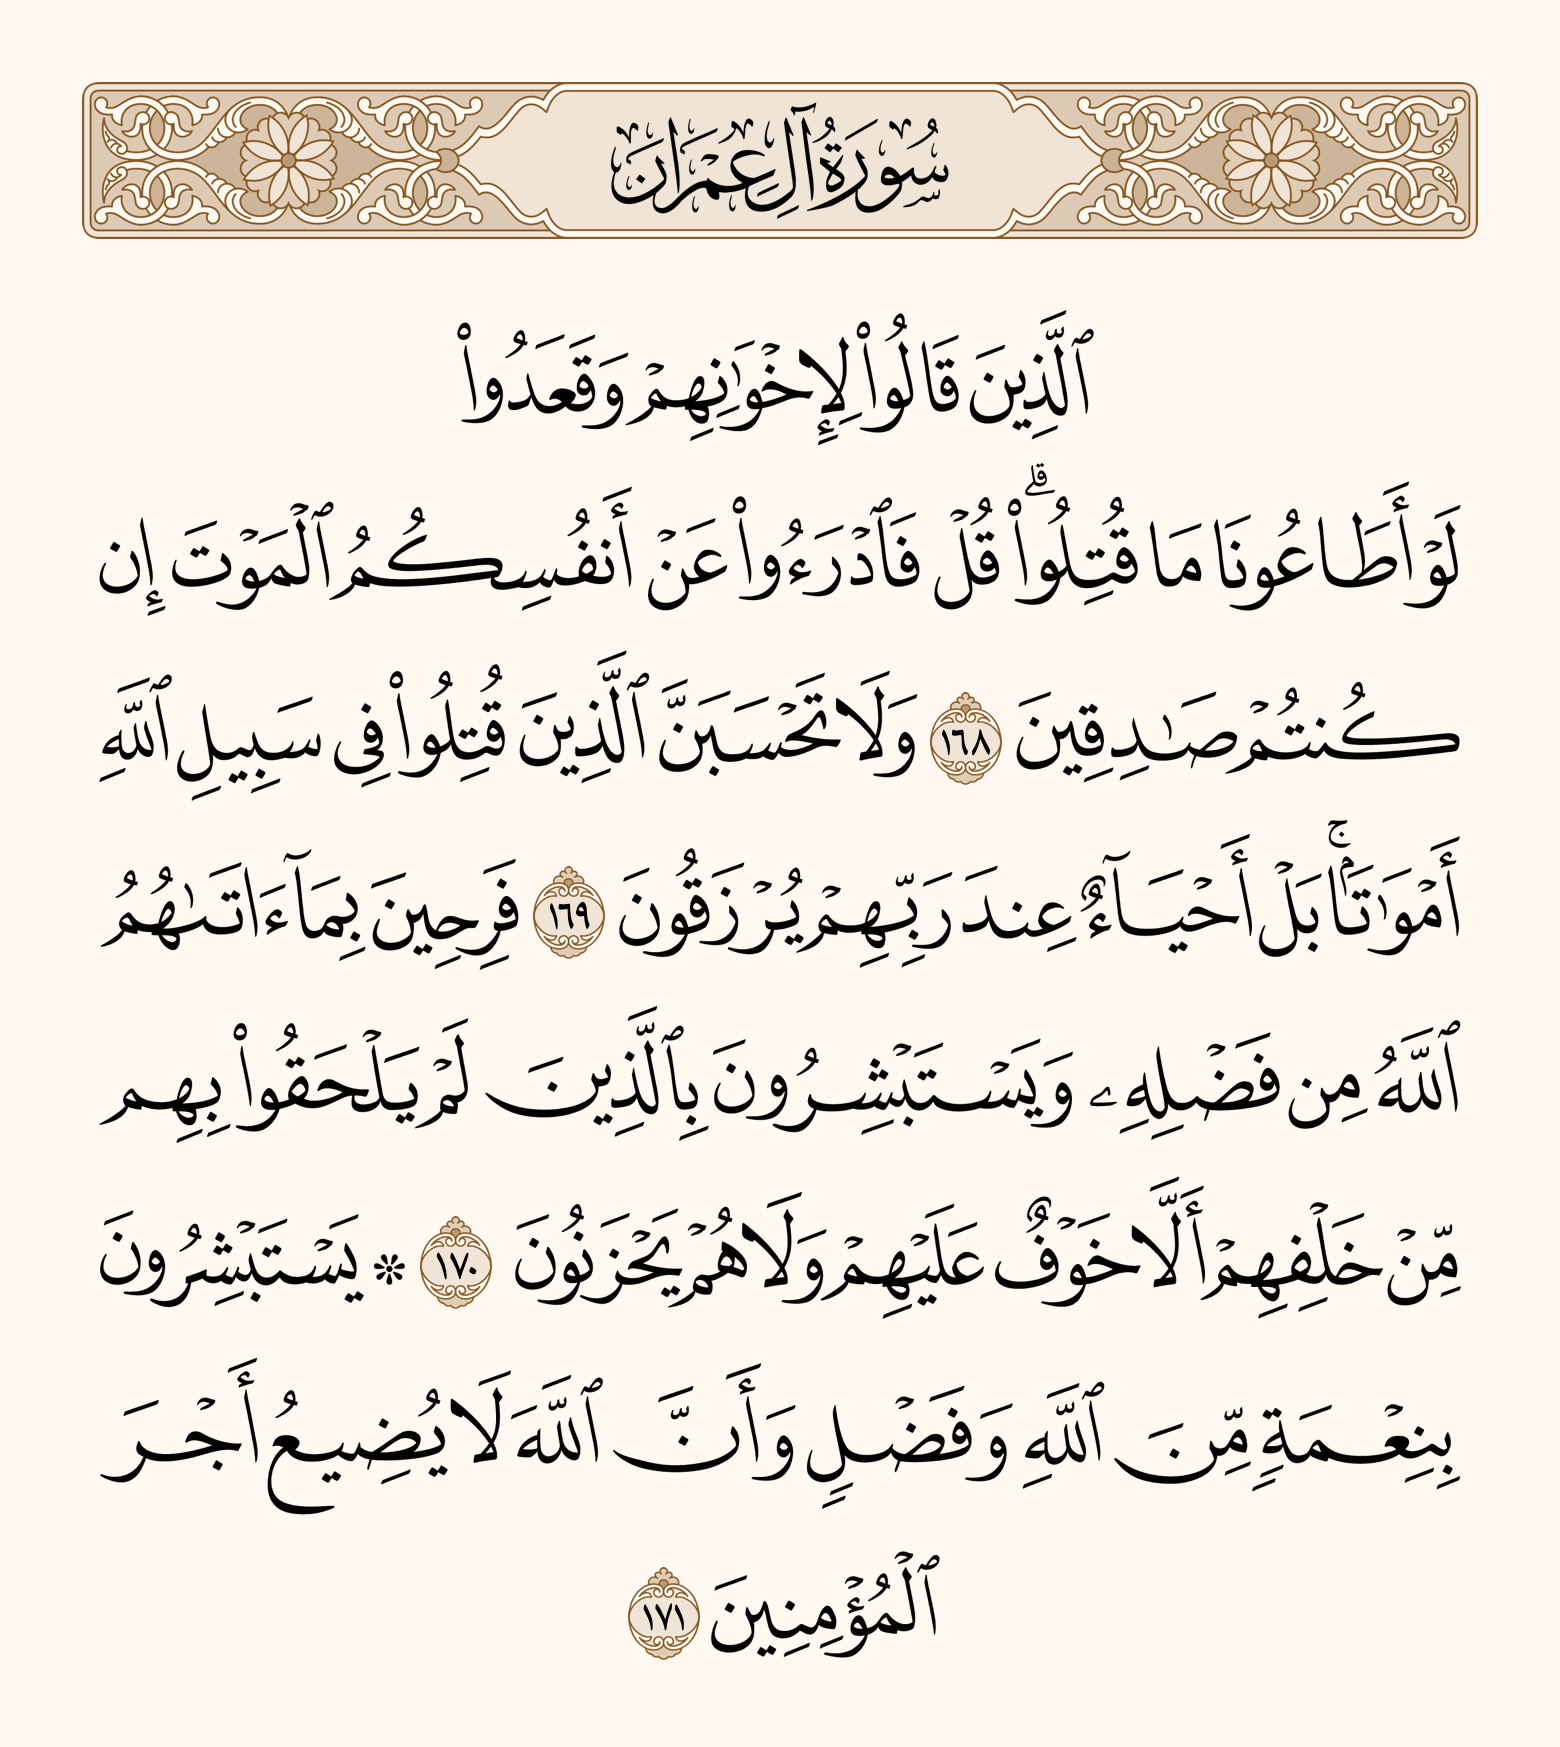 De iPhoneIslam.com, o Alcorão Sagrado em árabe com escrita árabe